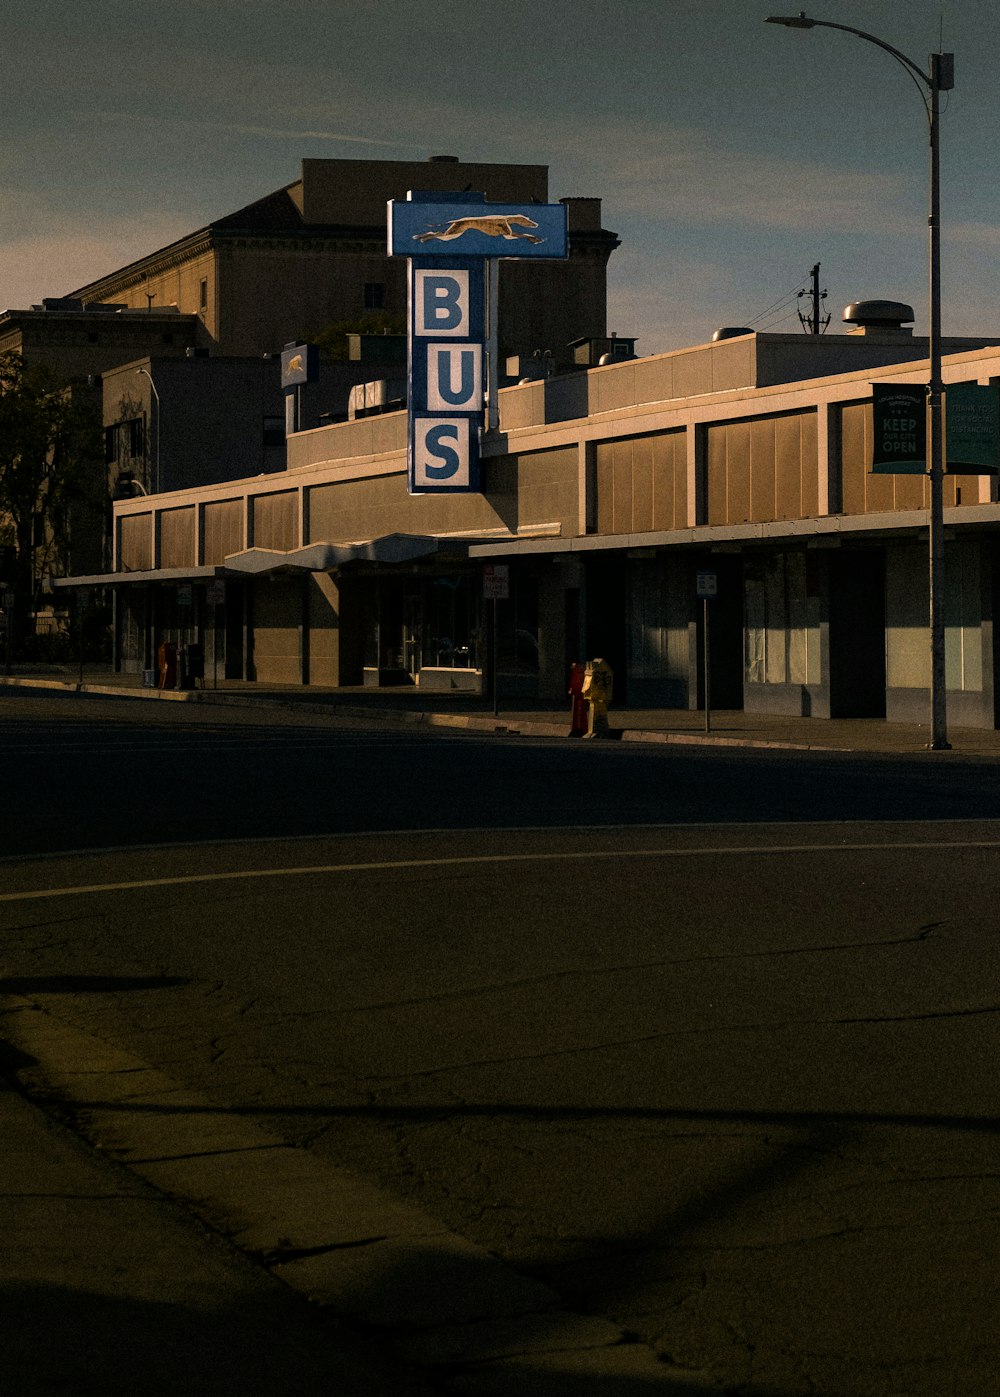 ein blaues Busschild am Straßenrand